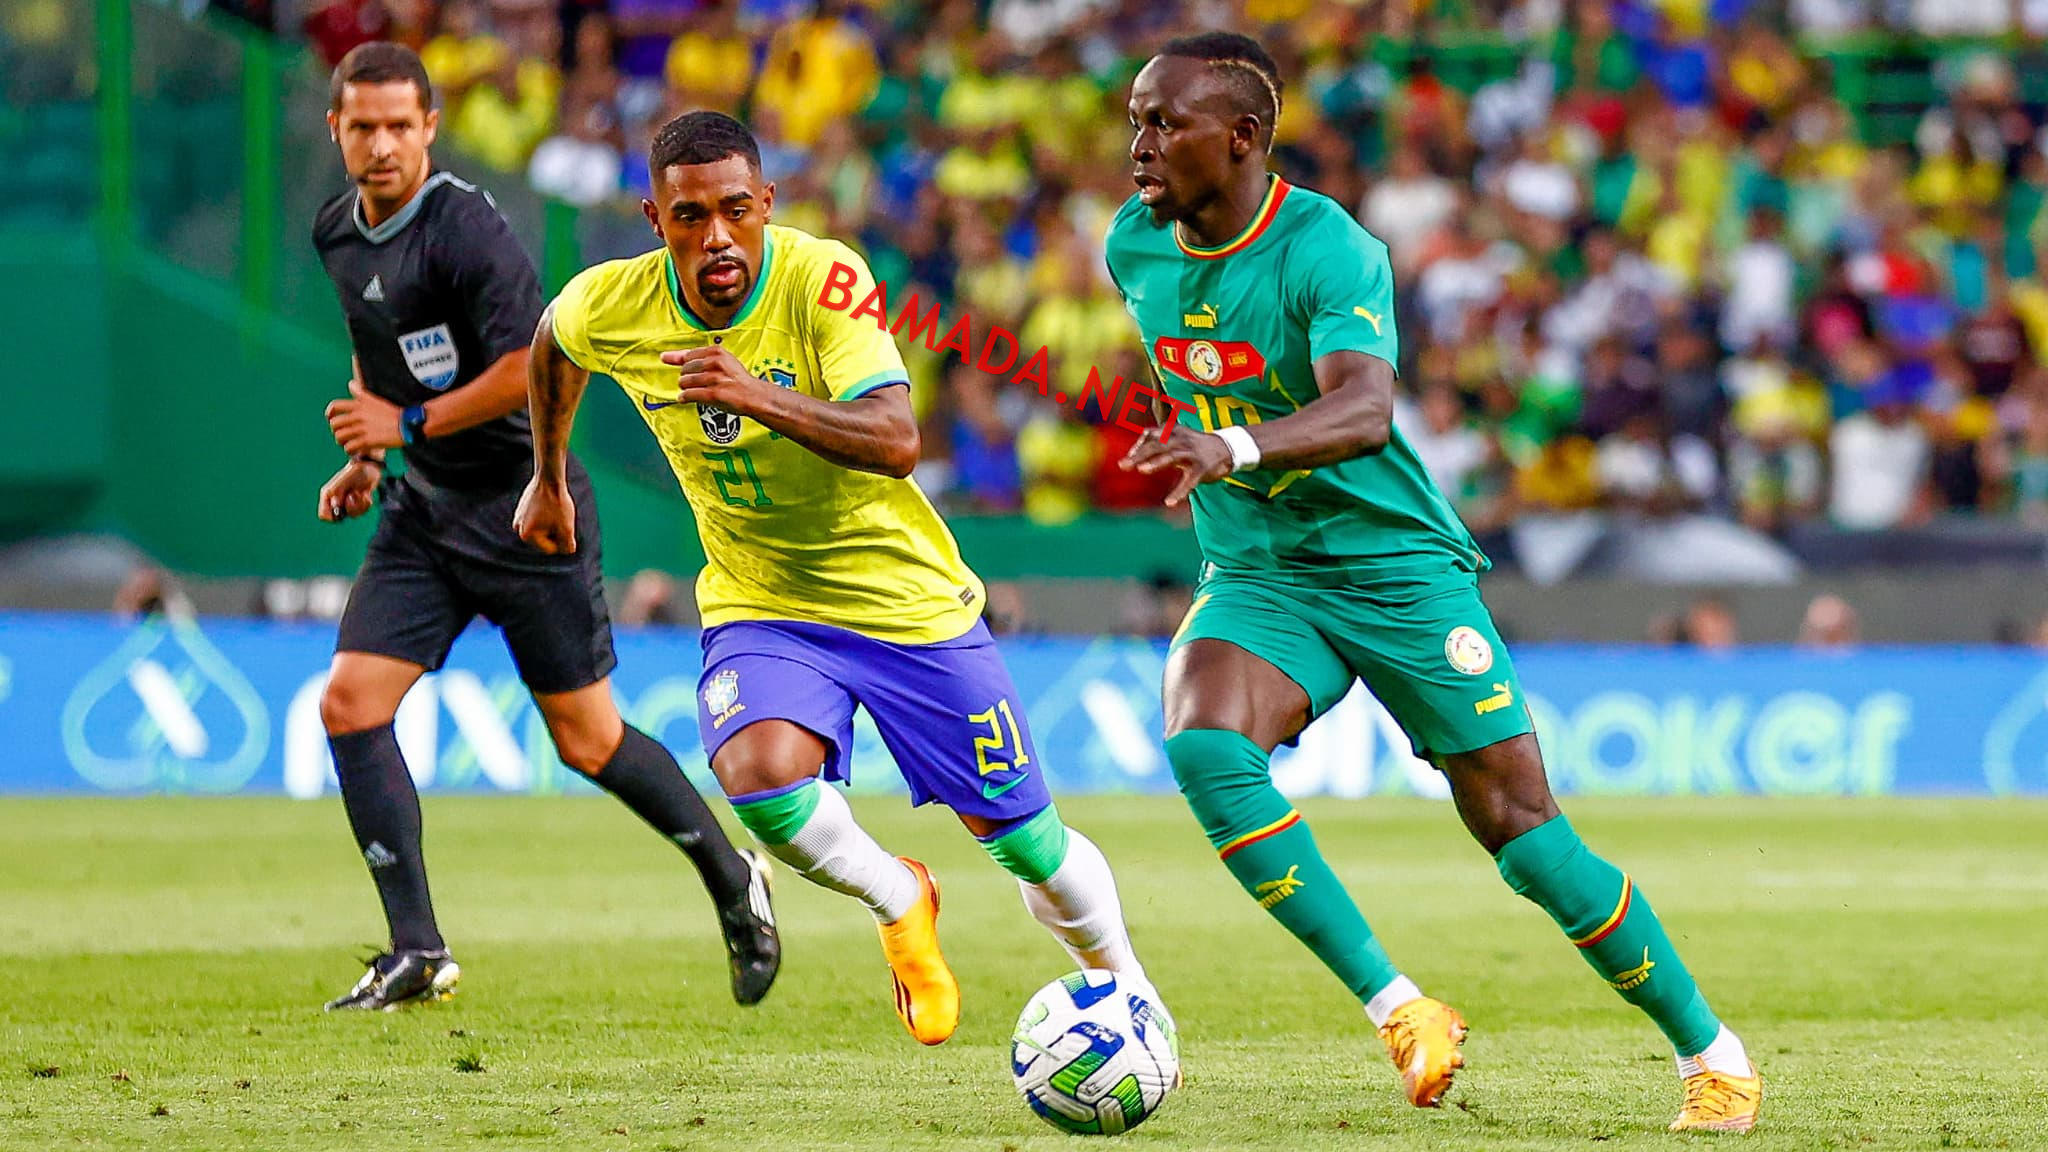 Esportes africanos: rumo ao renascimento do futebol continental?